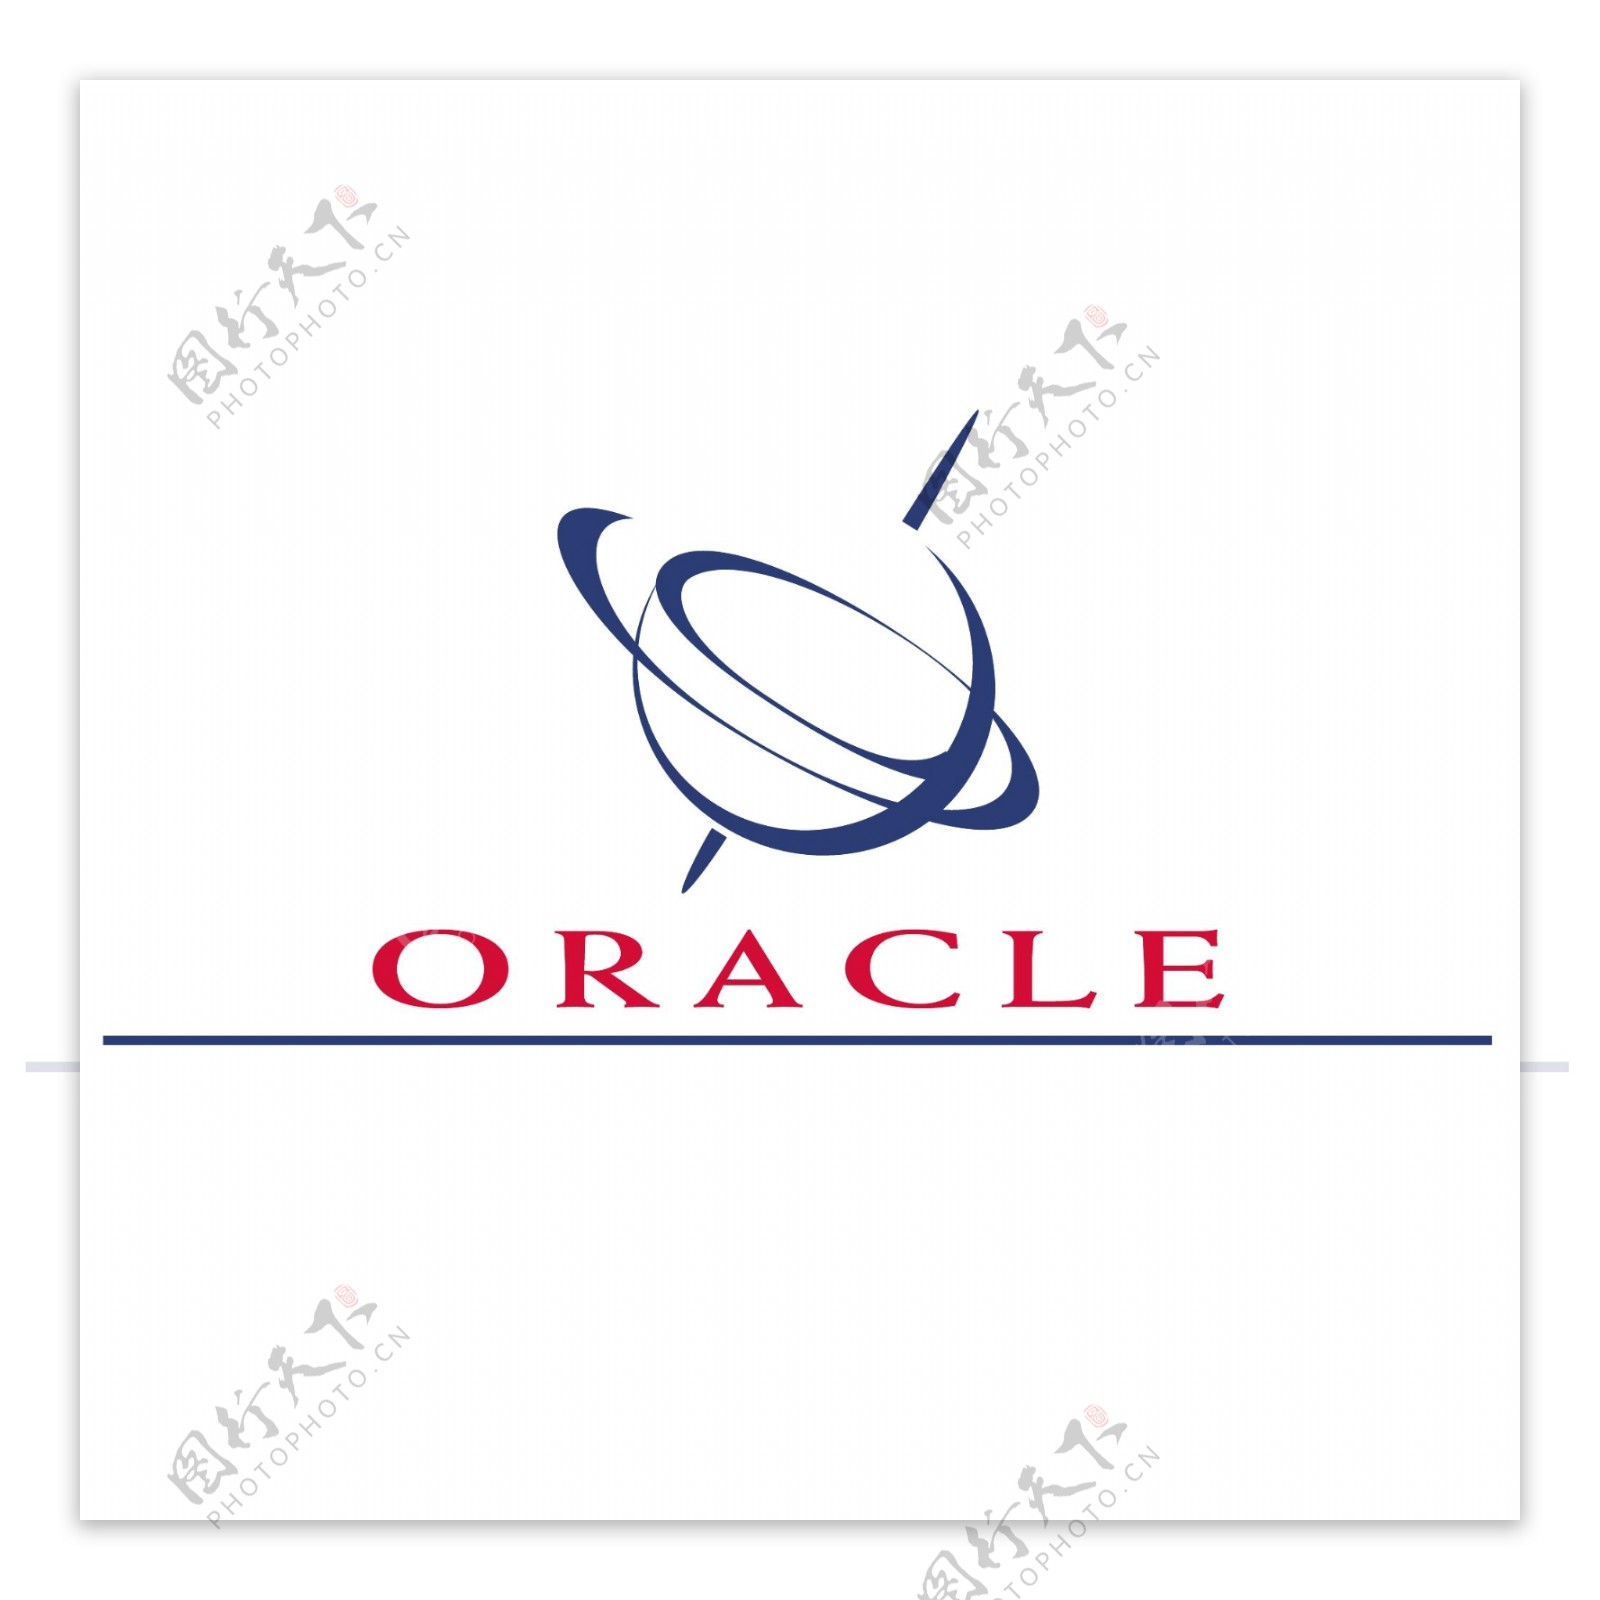 Oracle1